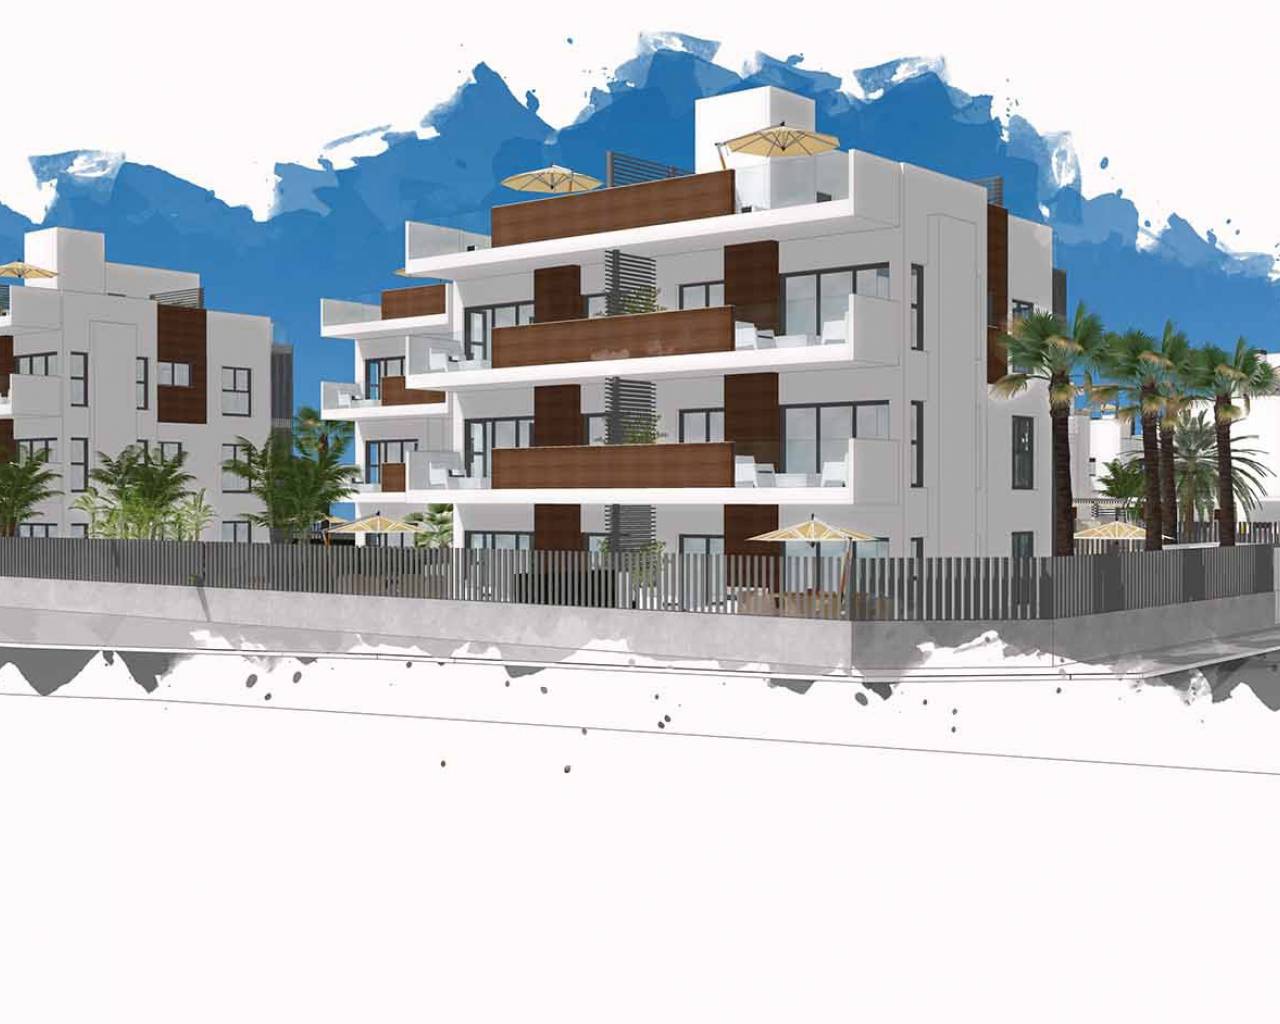 Neubauimmobilien zu verkaufen an der Costa Calida in Spanien